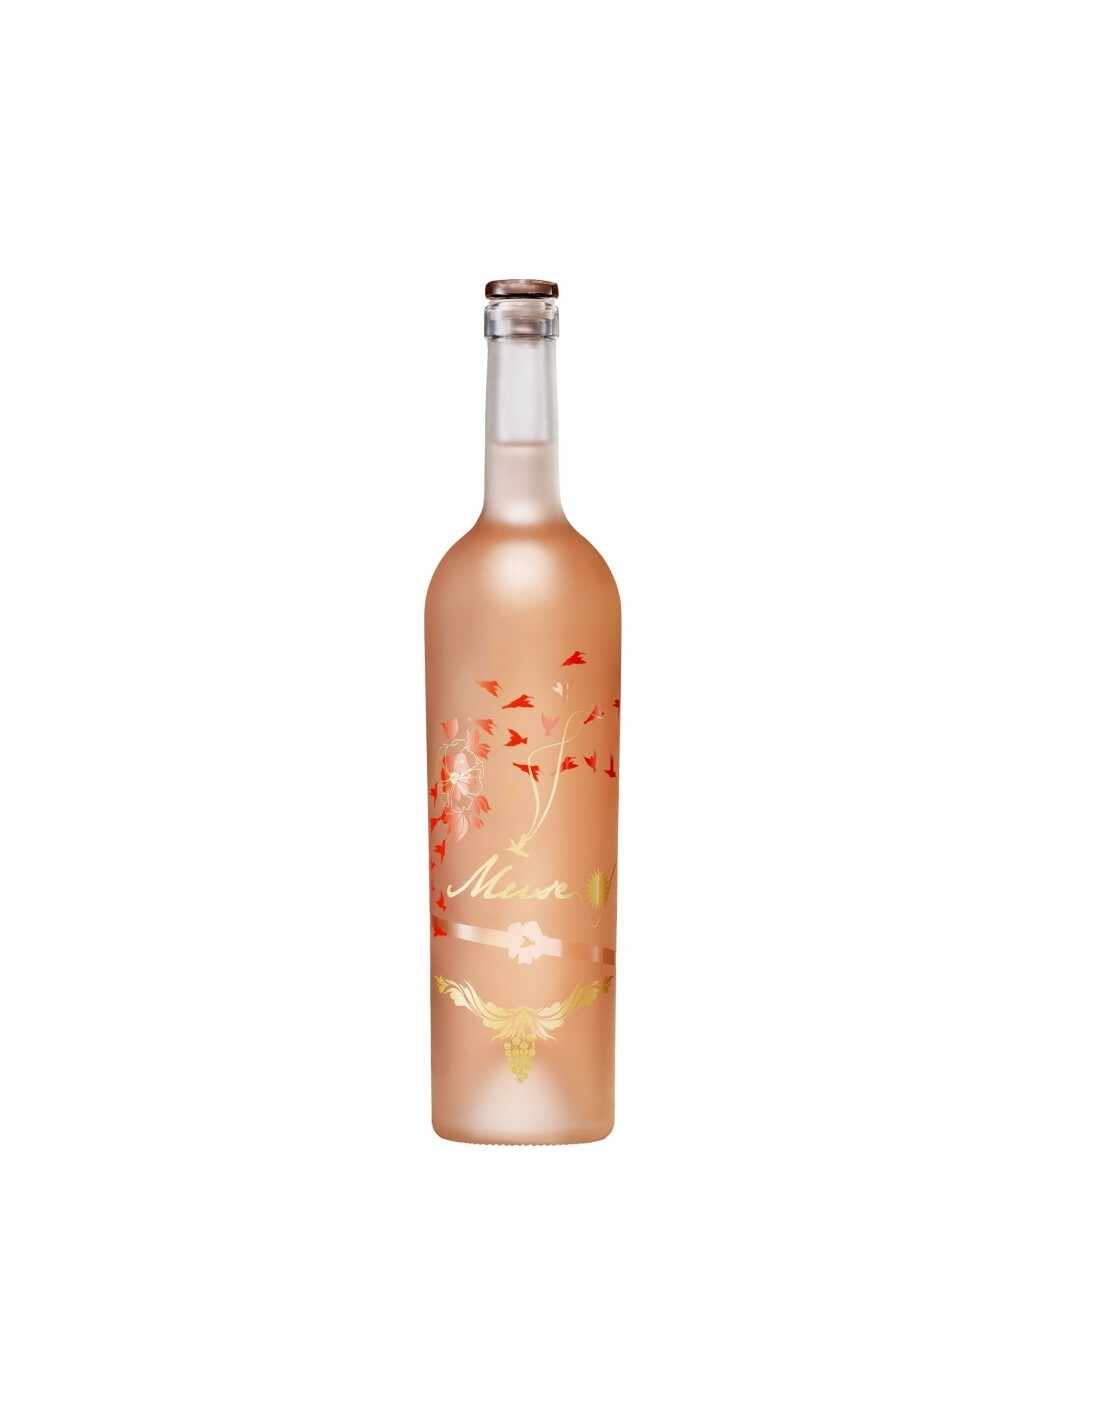 Vin roze sec Muse Day Recas, 0.75L, 12.5% alc., Romania